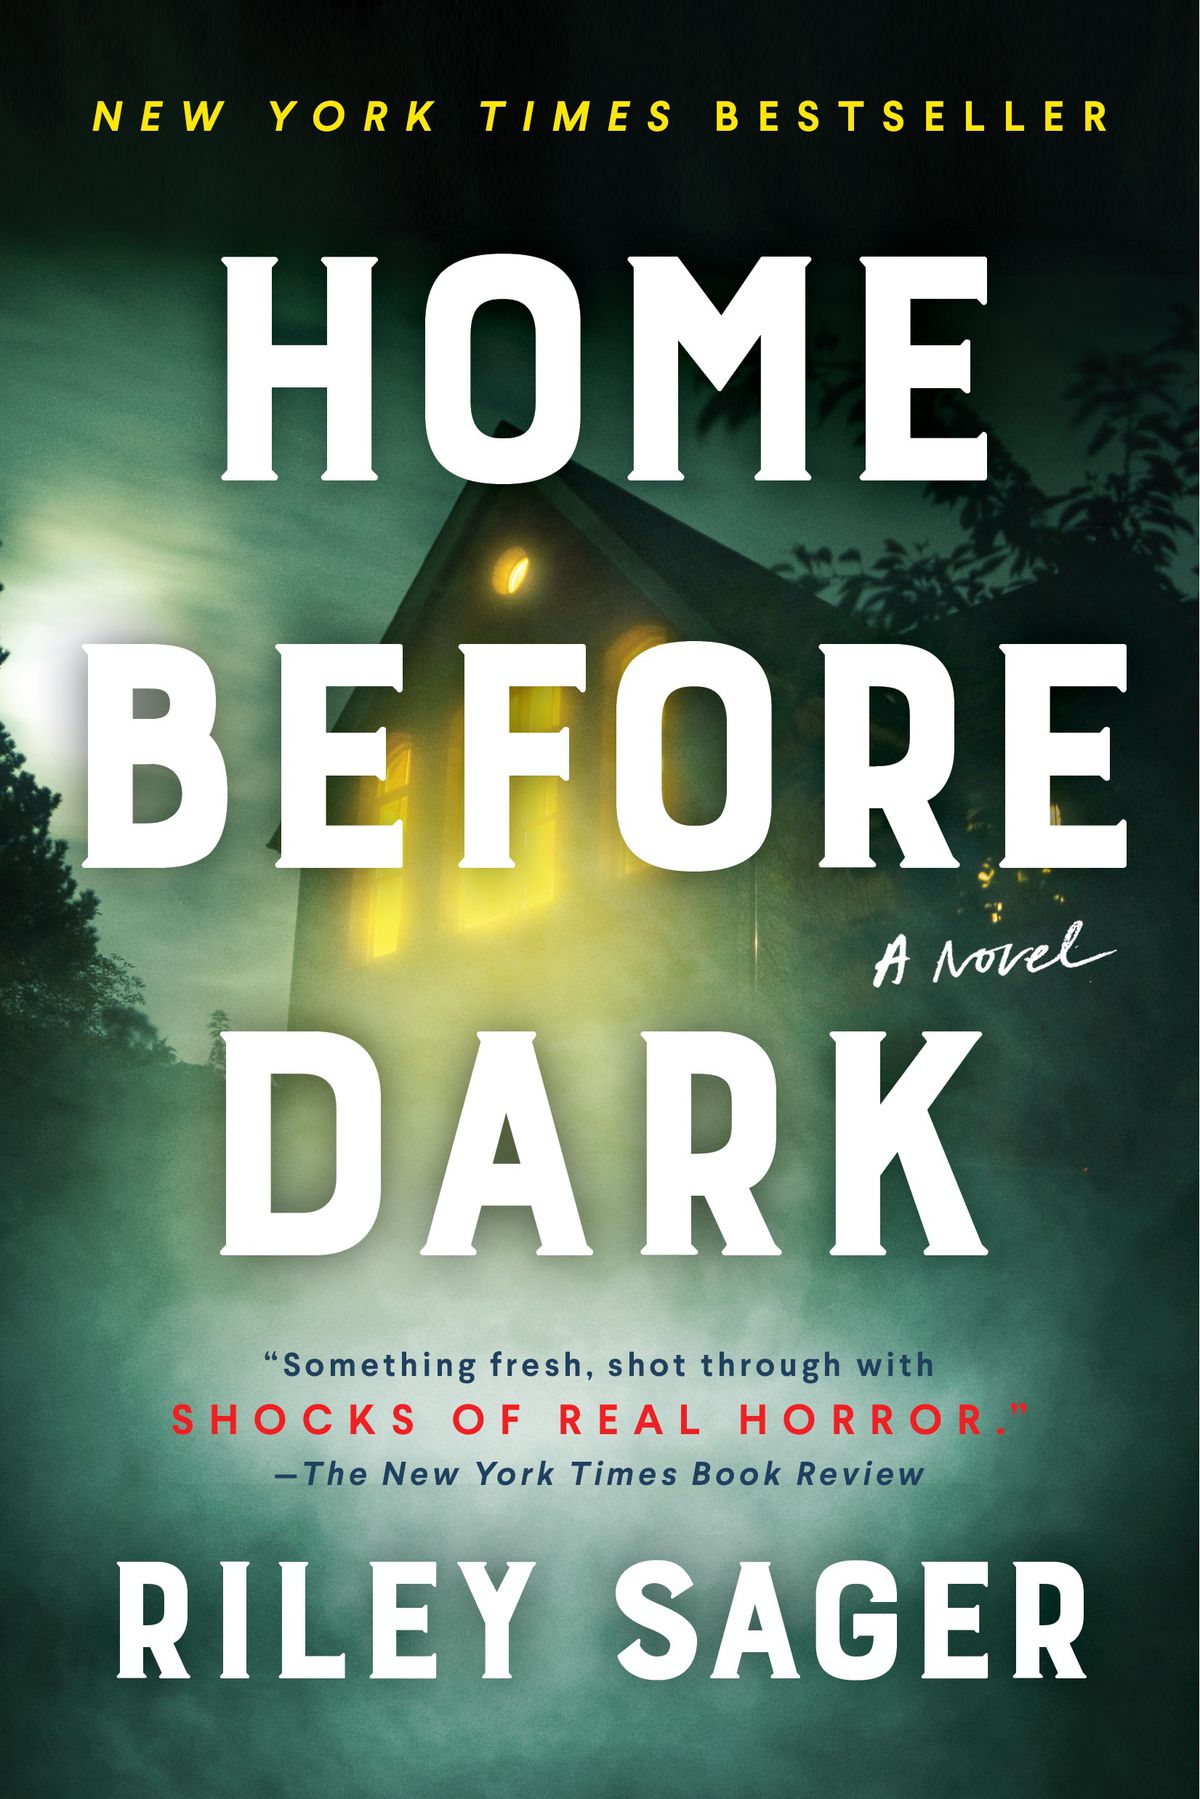 Image de couverture de Home Before Dark de Riley Sager, qui montre une maison avec les lumières allumées obscurcies par le brouillard.